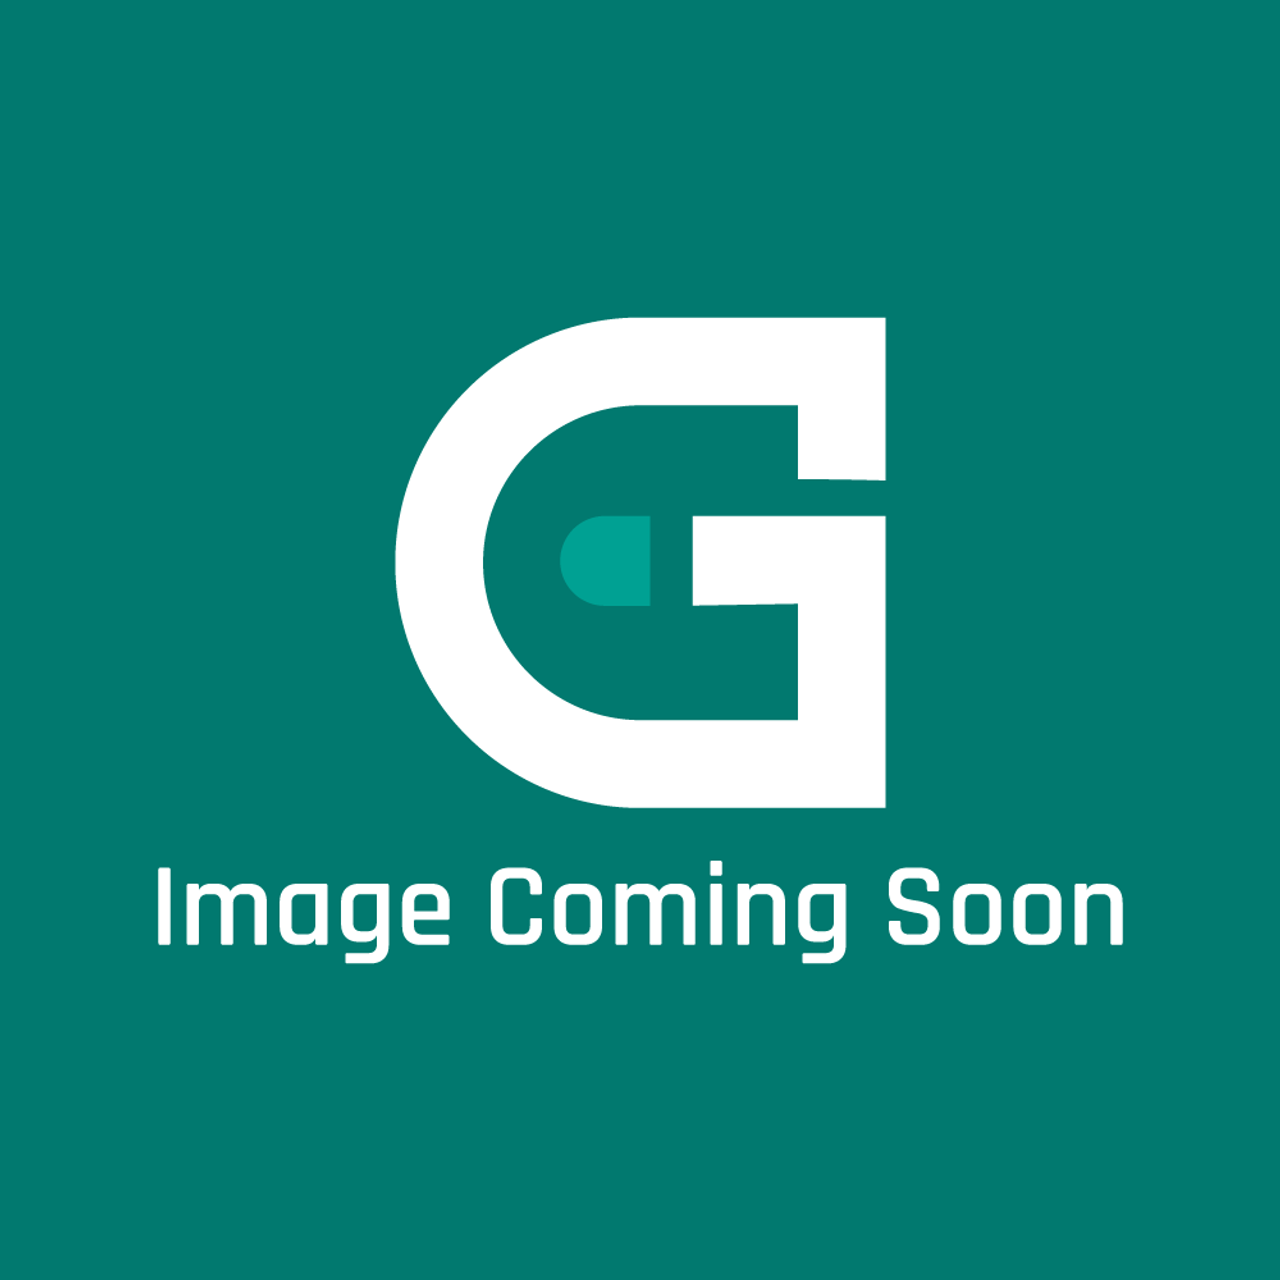 Pitco B6790001 - Wrg, Cmptr Auto Bkup W/ B/L - Image Coming Soon!